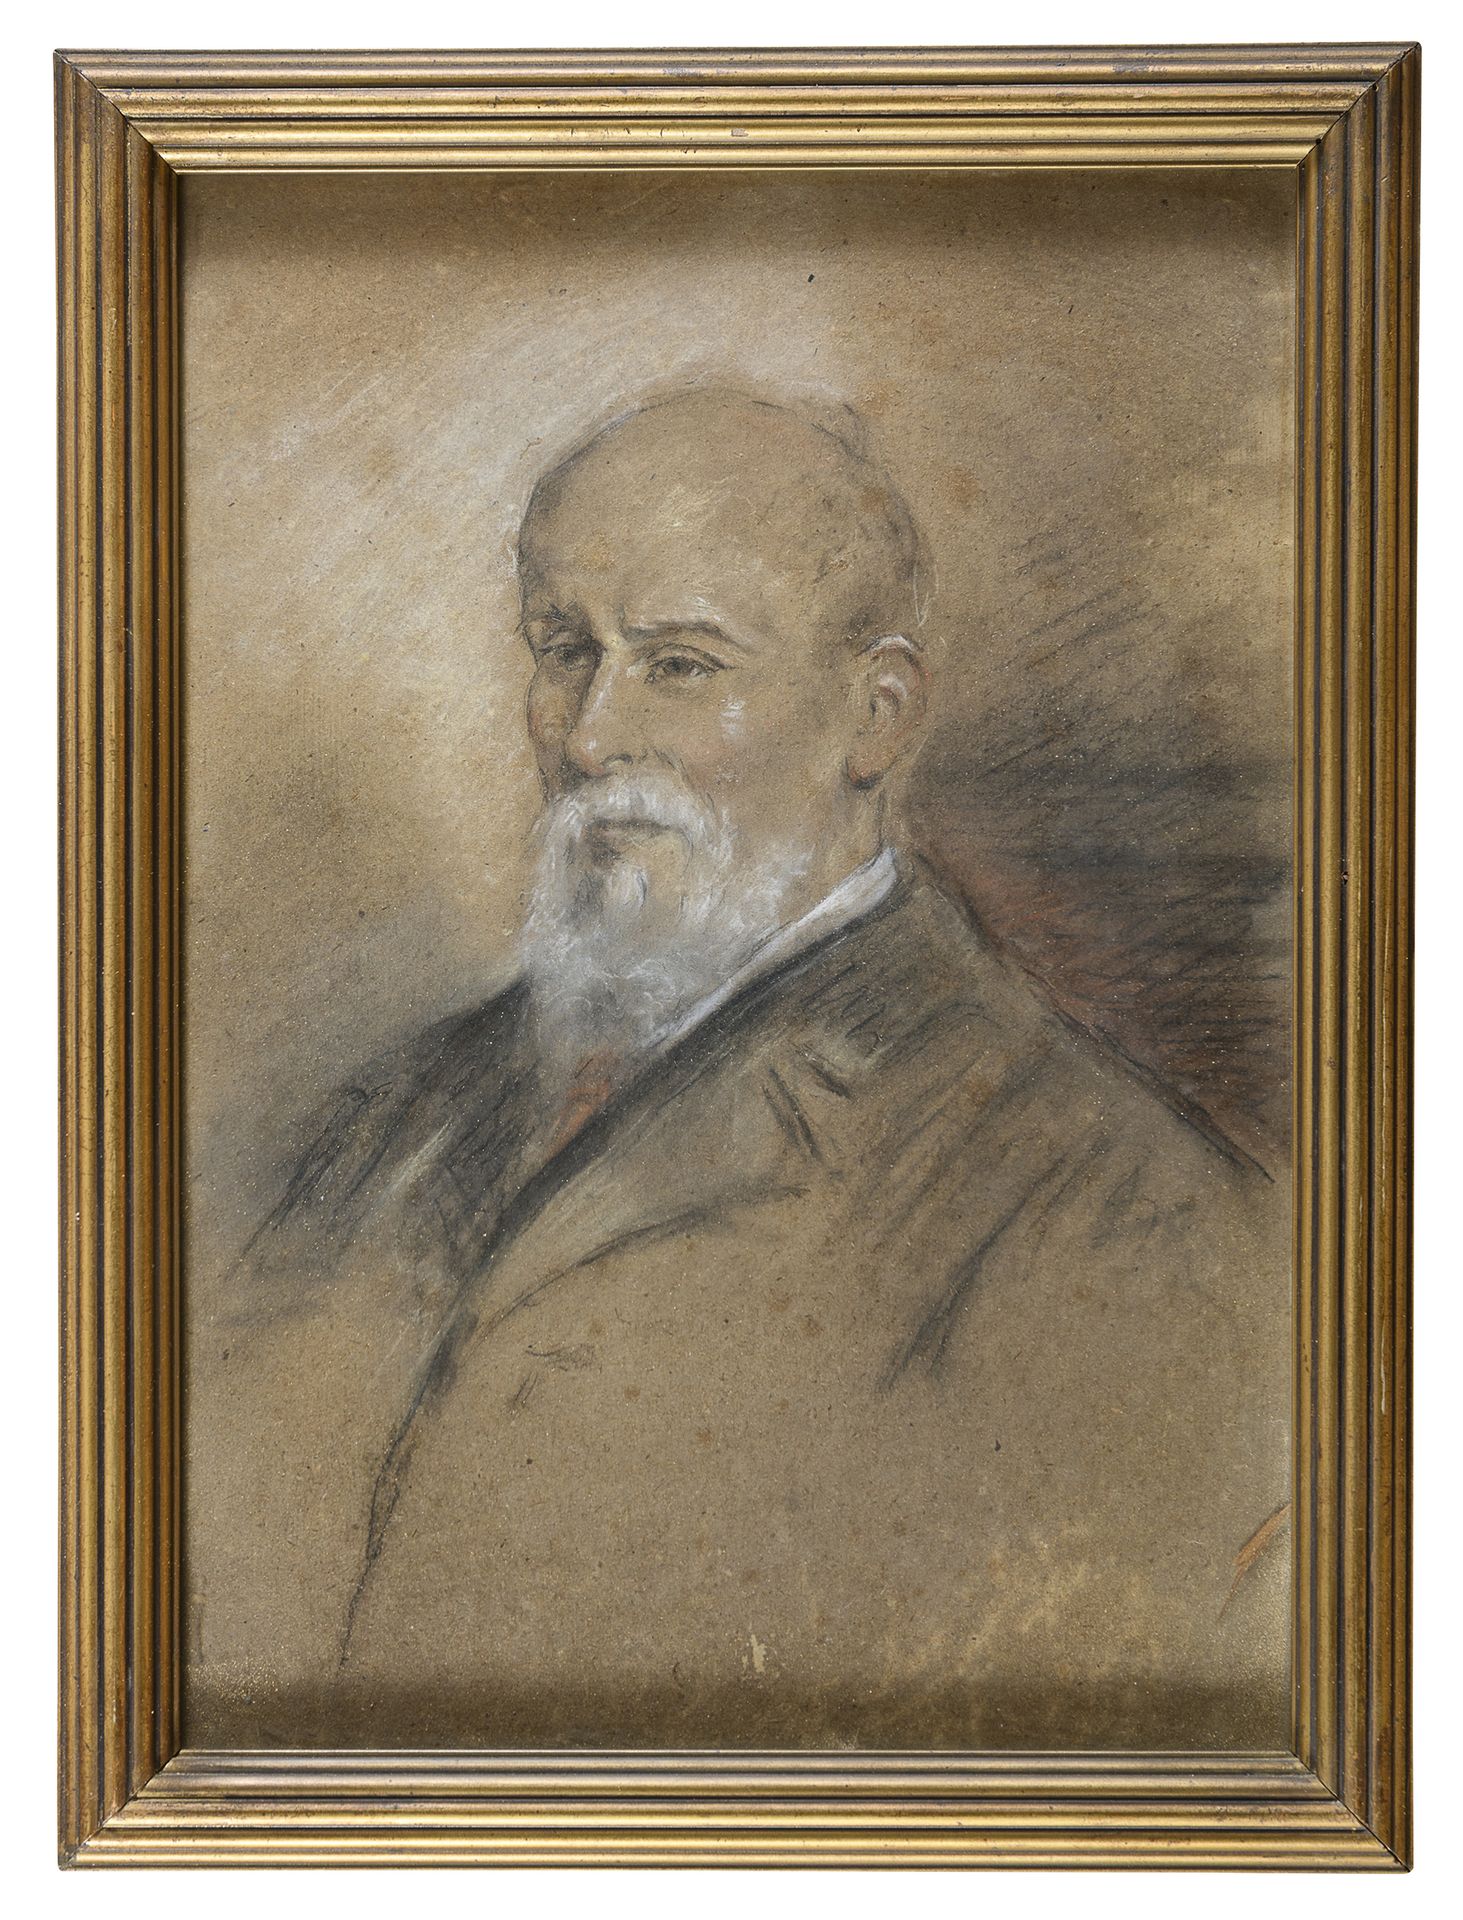 Null 意大利画家，19世纪末



肖像

棕色纸上的木炭和白铅，39 x 28厘米

无符号

镀金框架



证据

原为Avv.Carlo Castr&hellip;